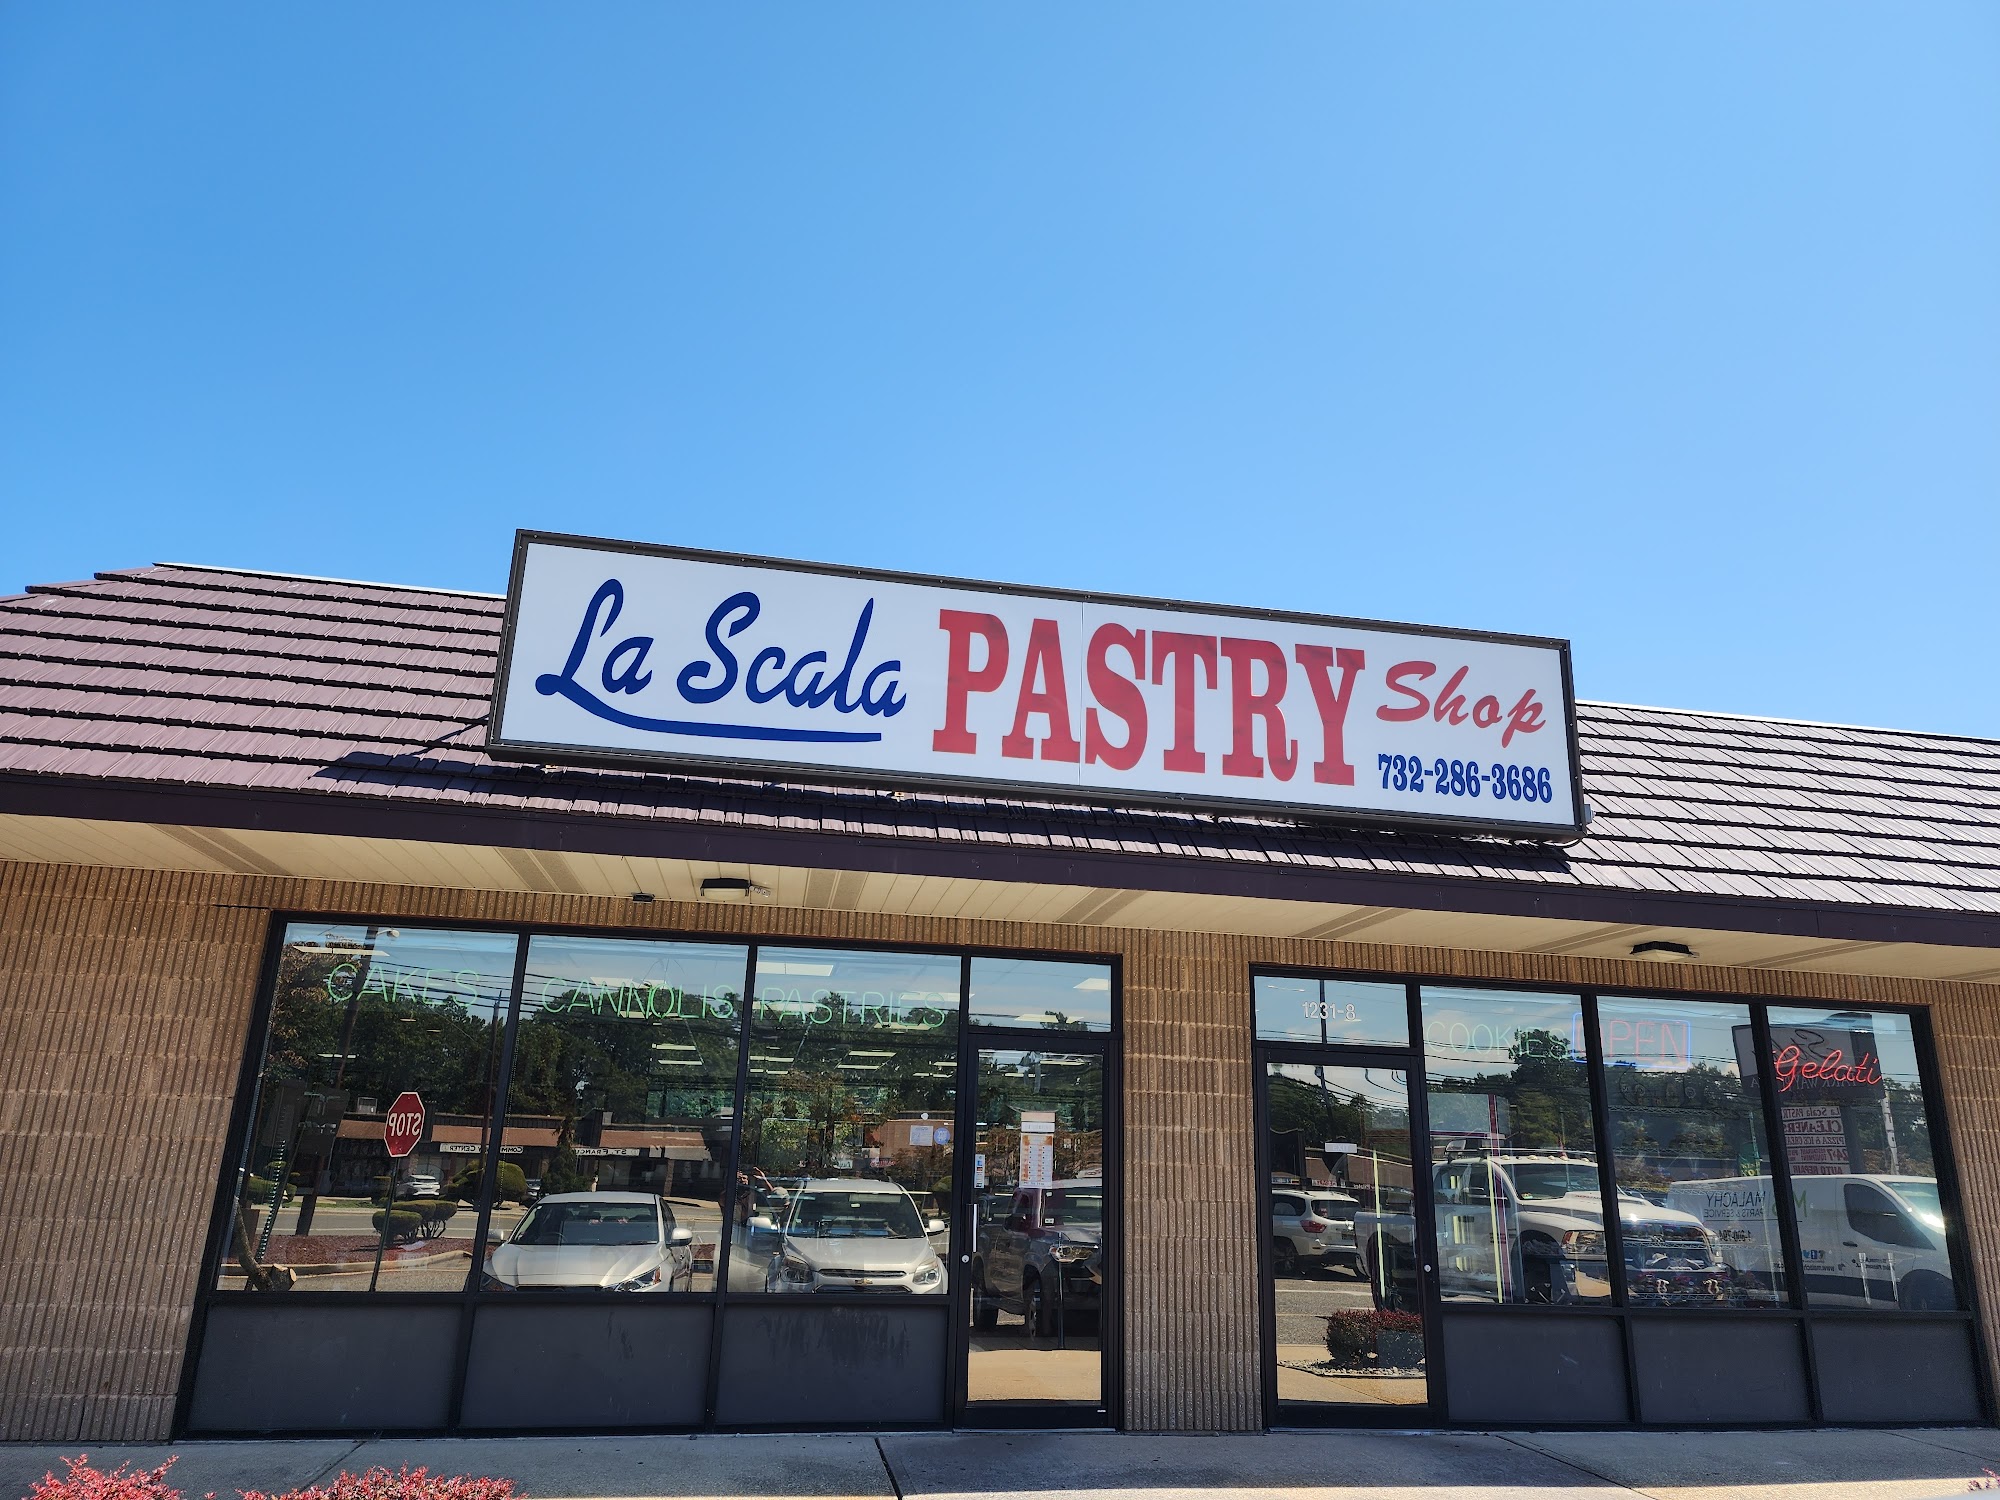 La Scala Italian Pastry Shop and Bakery